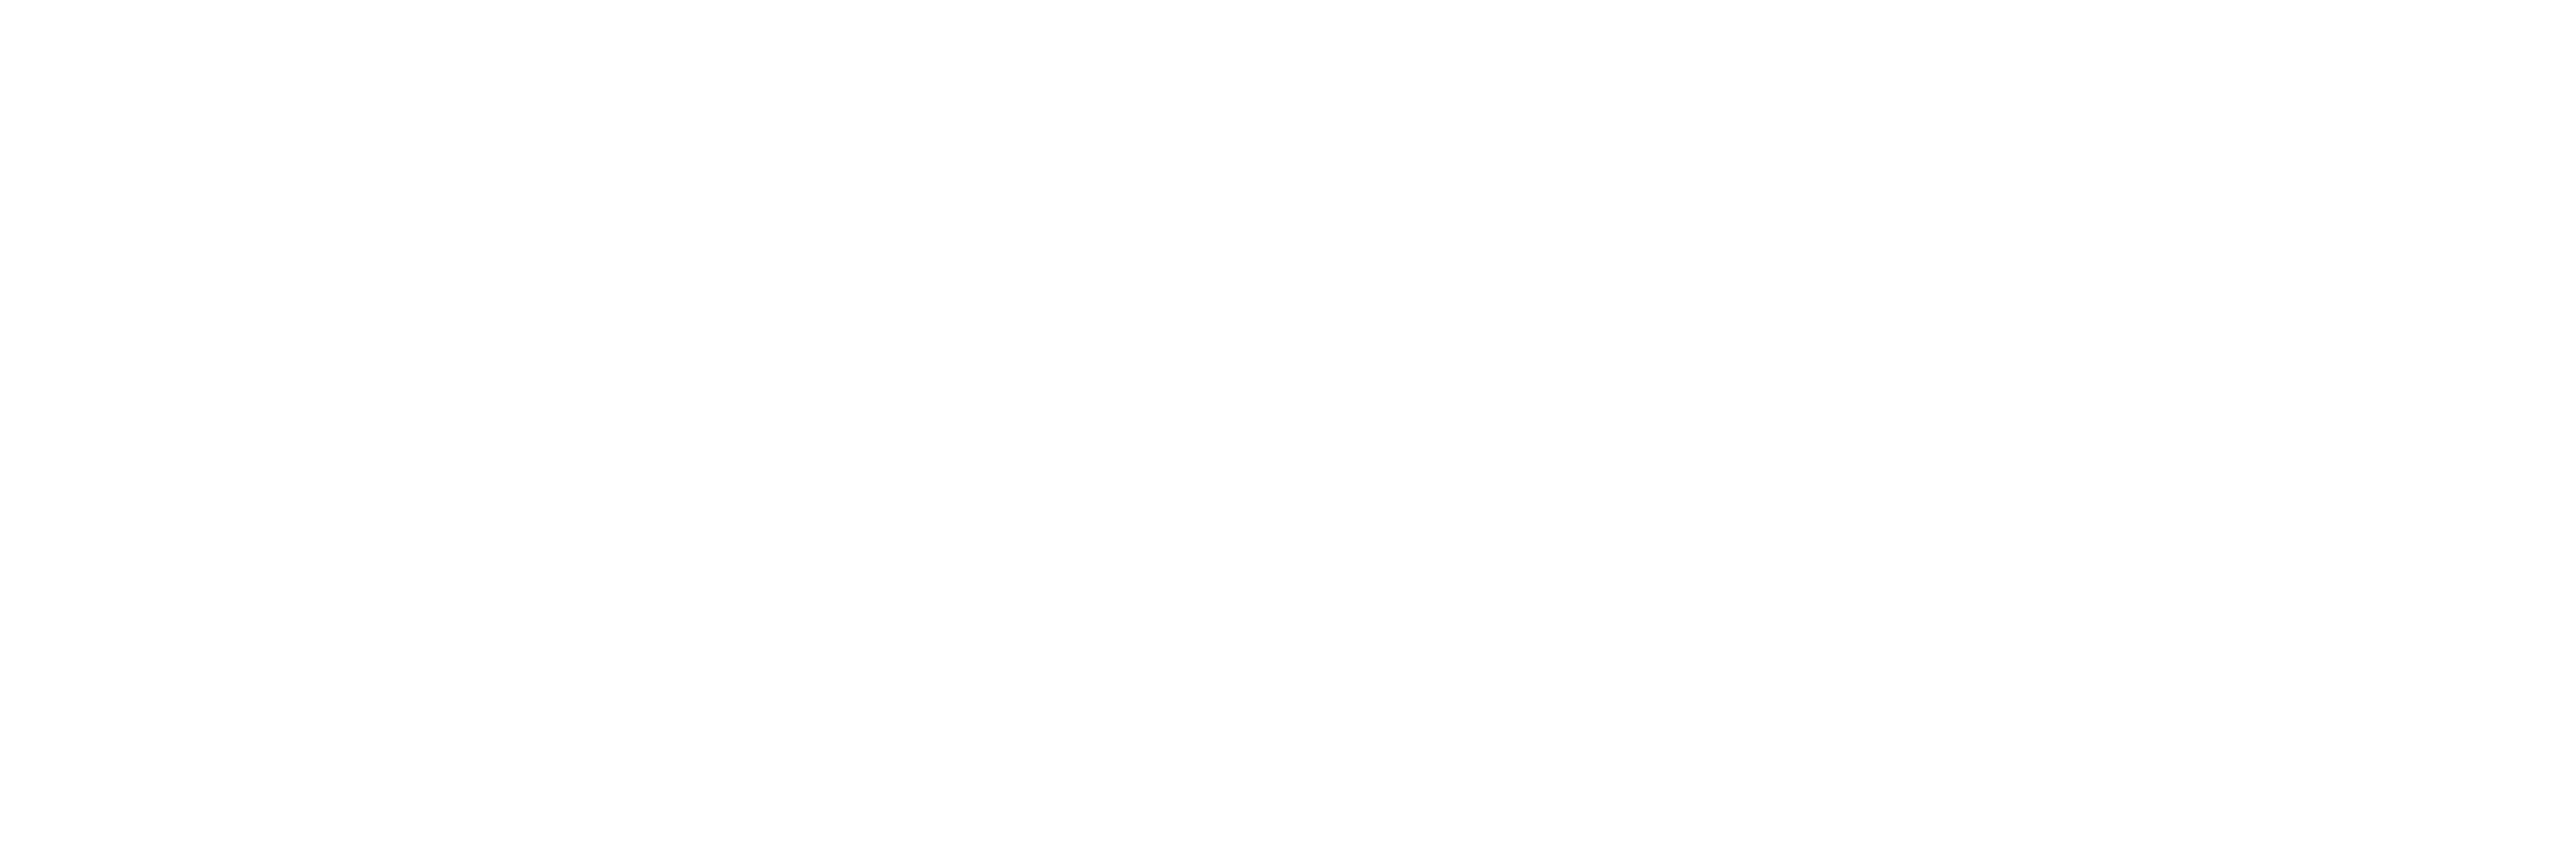 ASU endorsed logo: Ira A. Fulton Schools of Engineering.